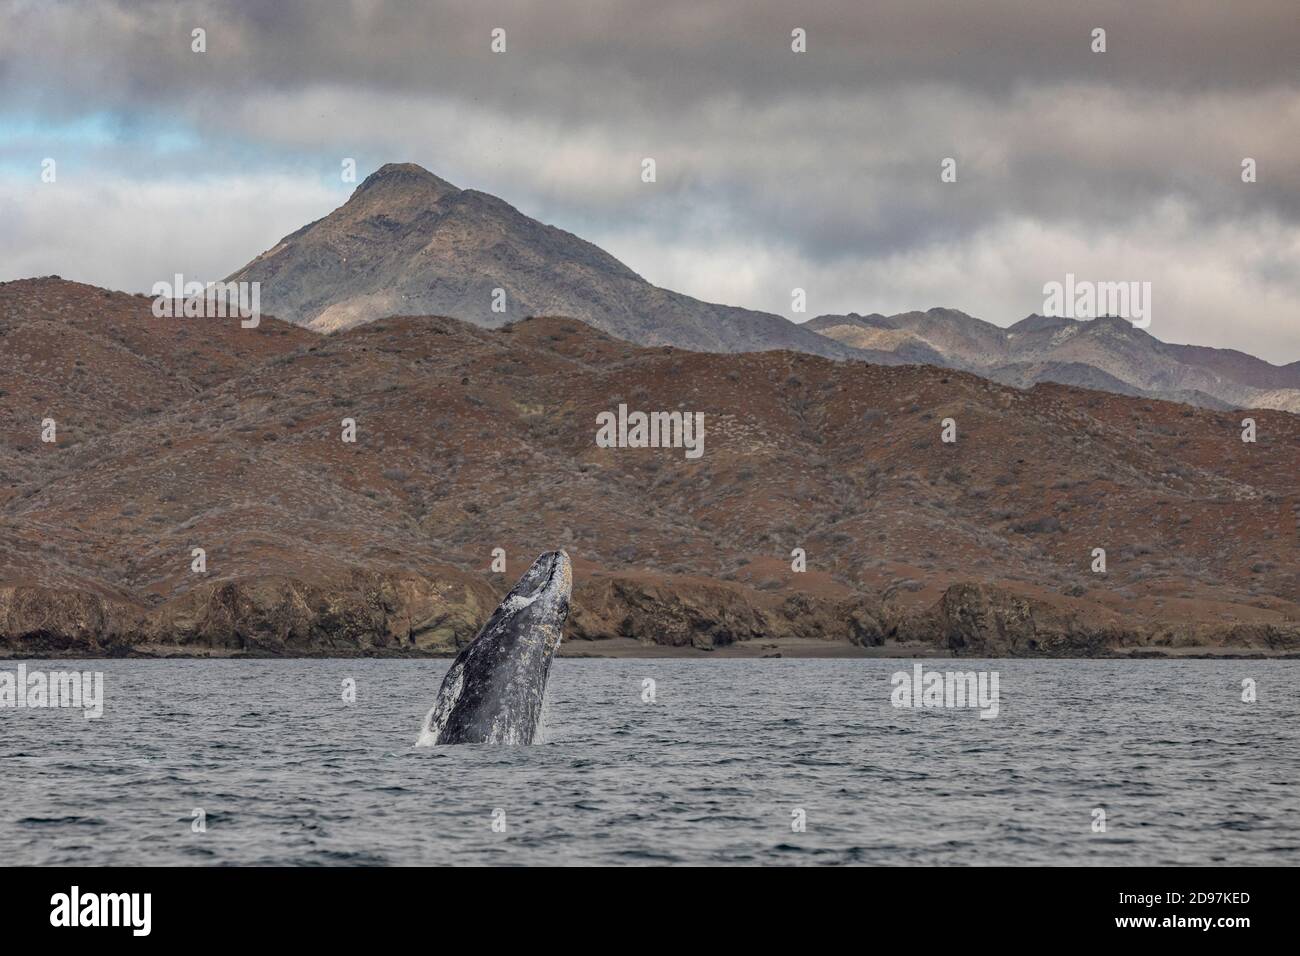 Ballena gris (Eschrichtius robustus) breaching, saltando del agua, con el barco de observación de ballenas cerca, Bahía Magdalena, Baja California, México. Foto de stock